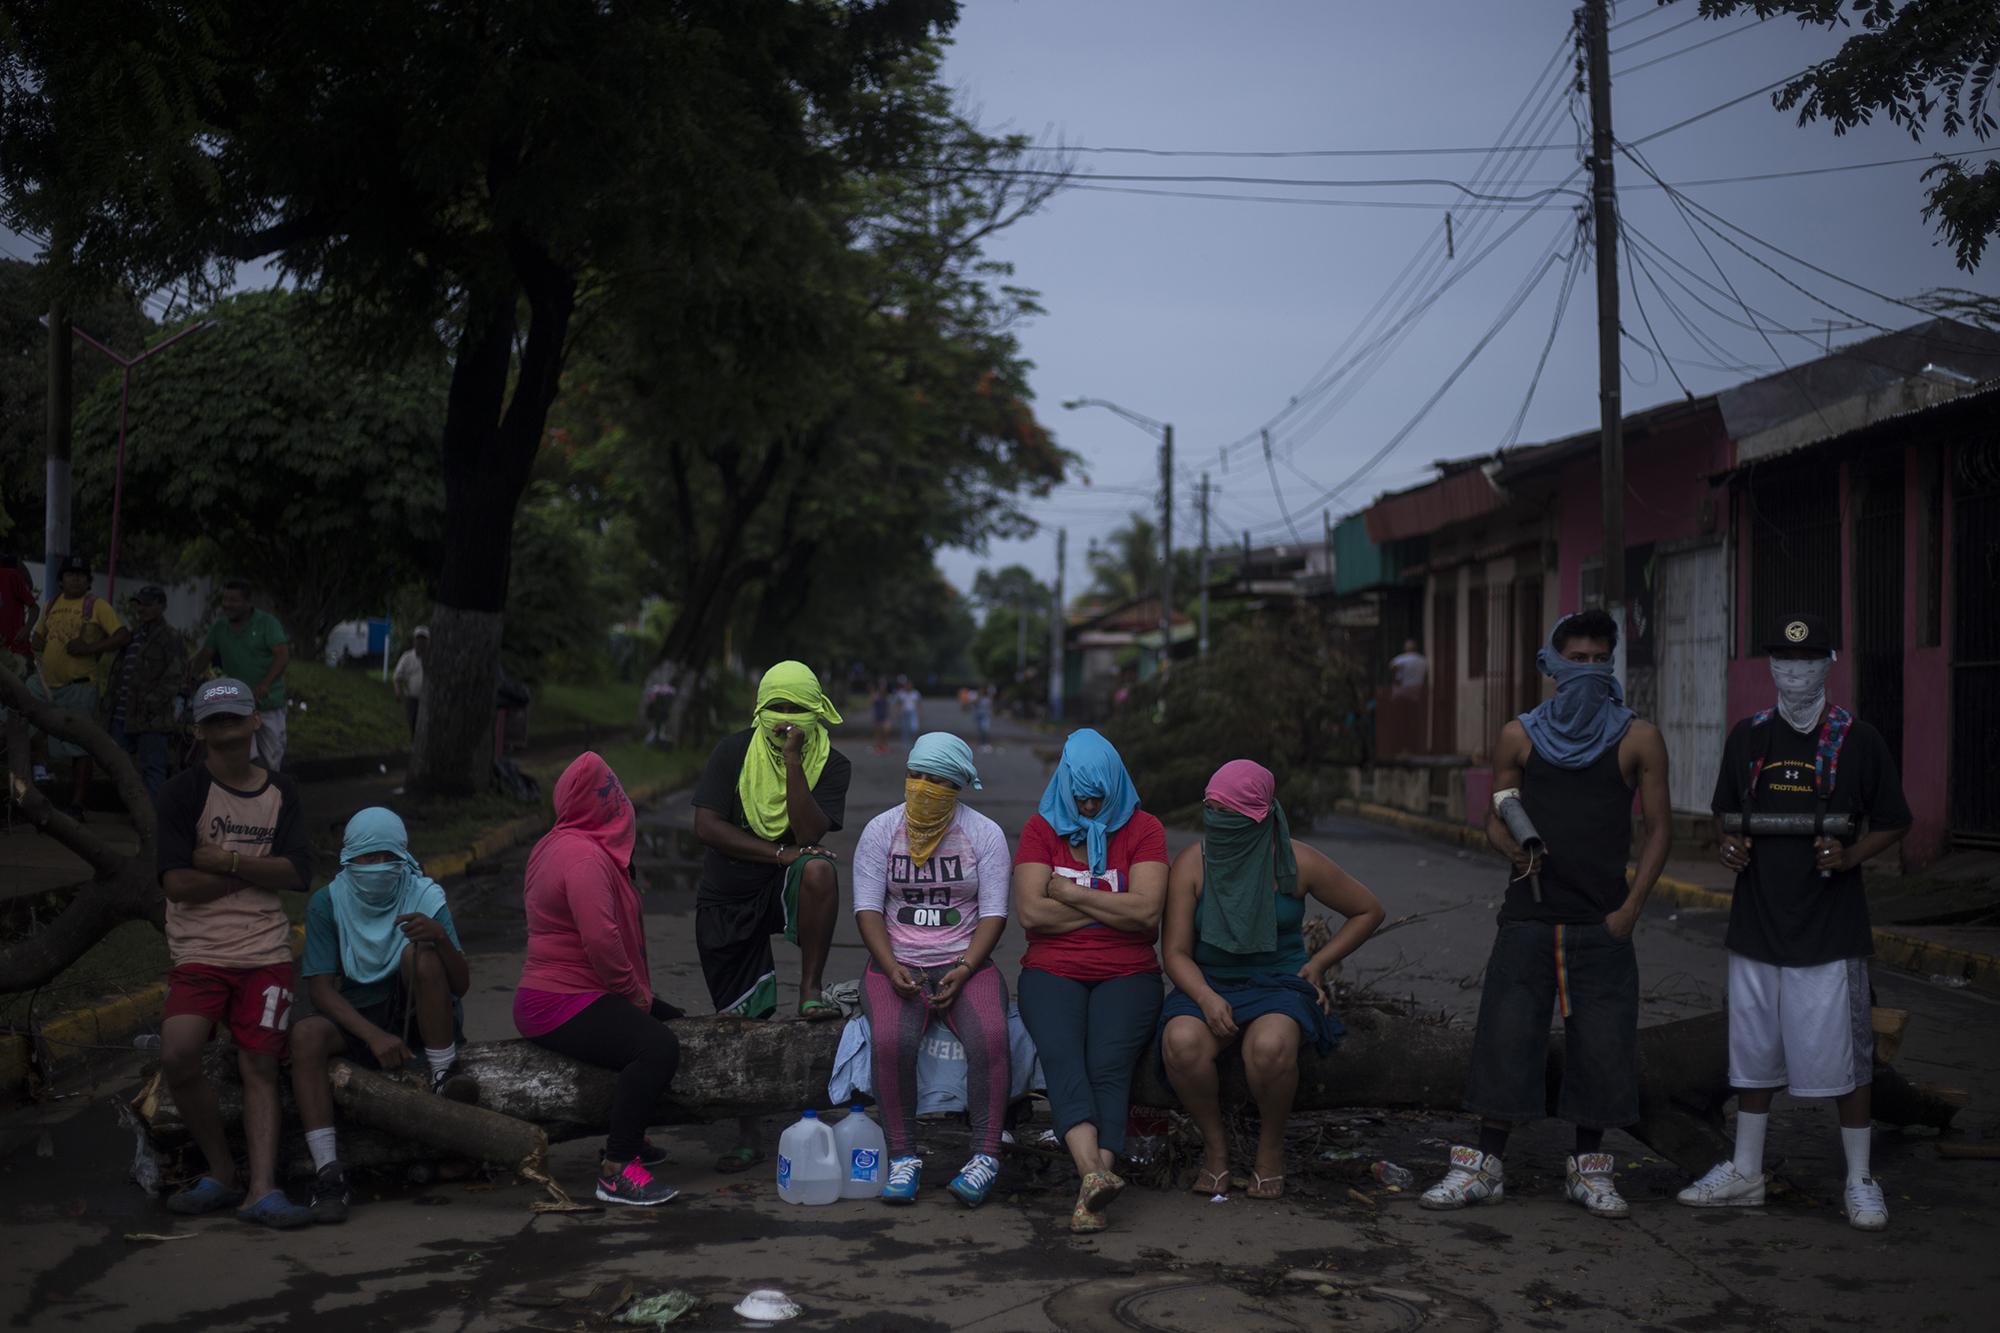 Los habitantes de Masaya, Nicaragua, tomaron el control de las calles. Cerraron el acceso a la ciudad para detener la represión policial contra los opositores de Daniel Ortega y Rosario Murillo. Foto de El Faro: Víctor Peña. 